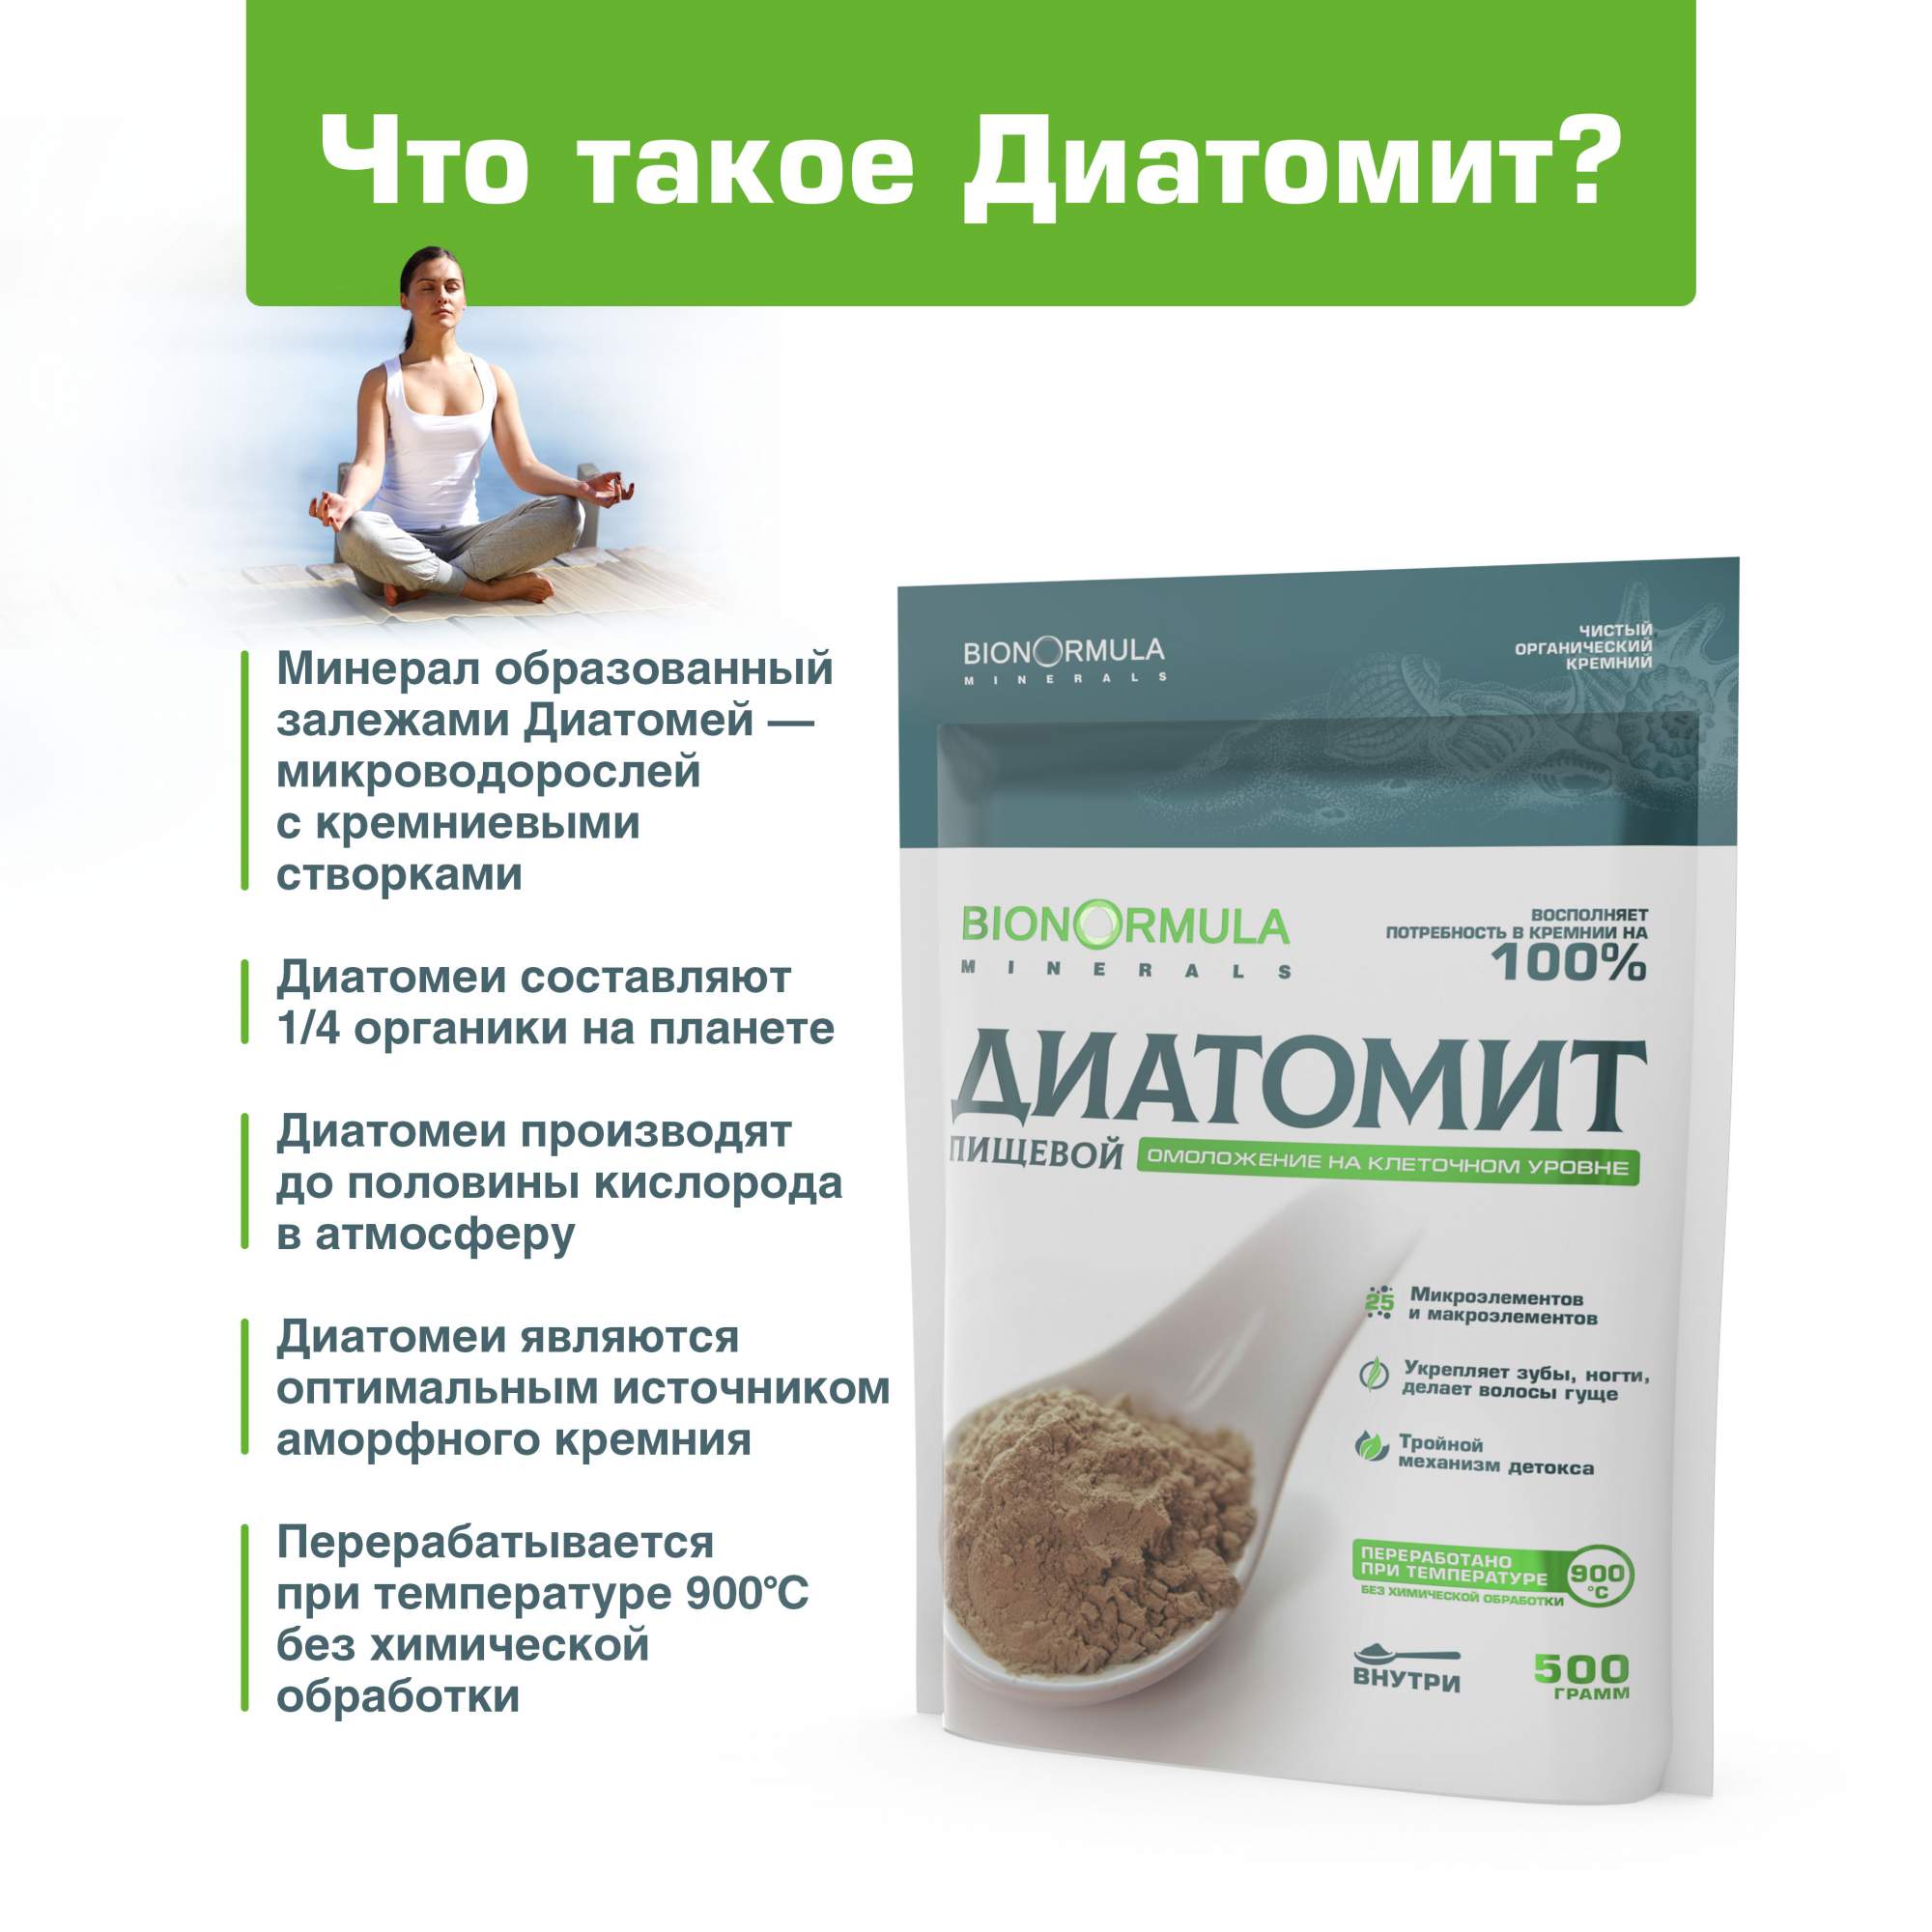 Пищевой ДИАТОМИТ Bionormula Кизельгур для очищения организма, похудения,  здоровья, 500 г - купить в Prodex Москва FBS, цена на Мегамаркет